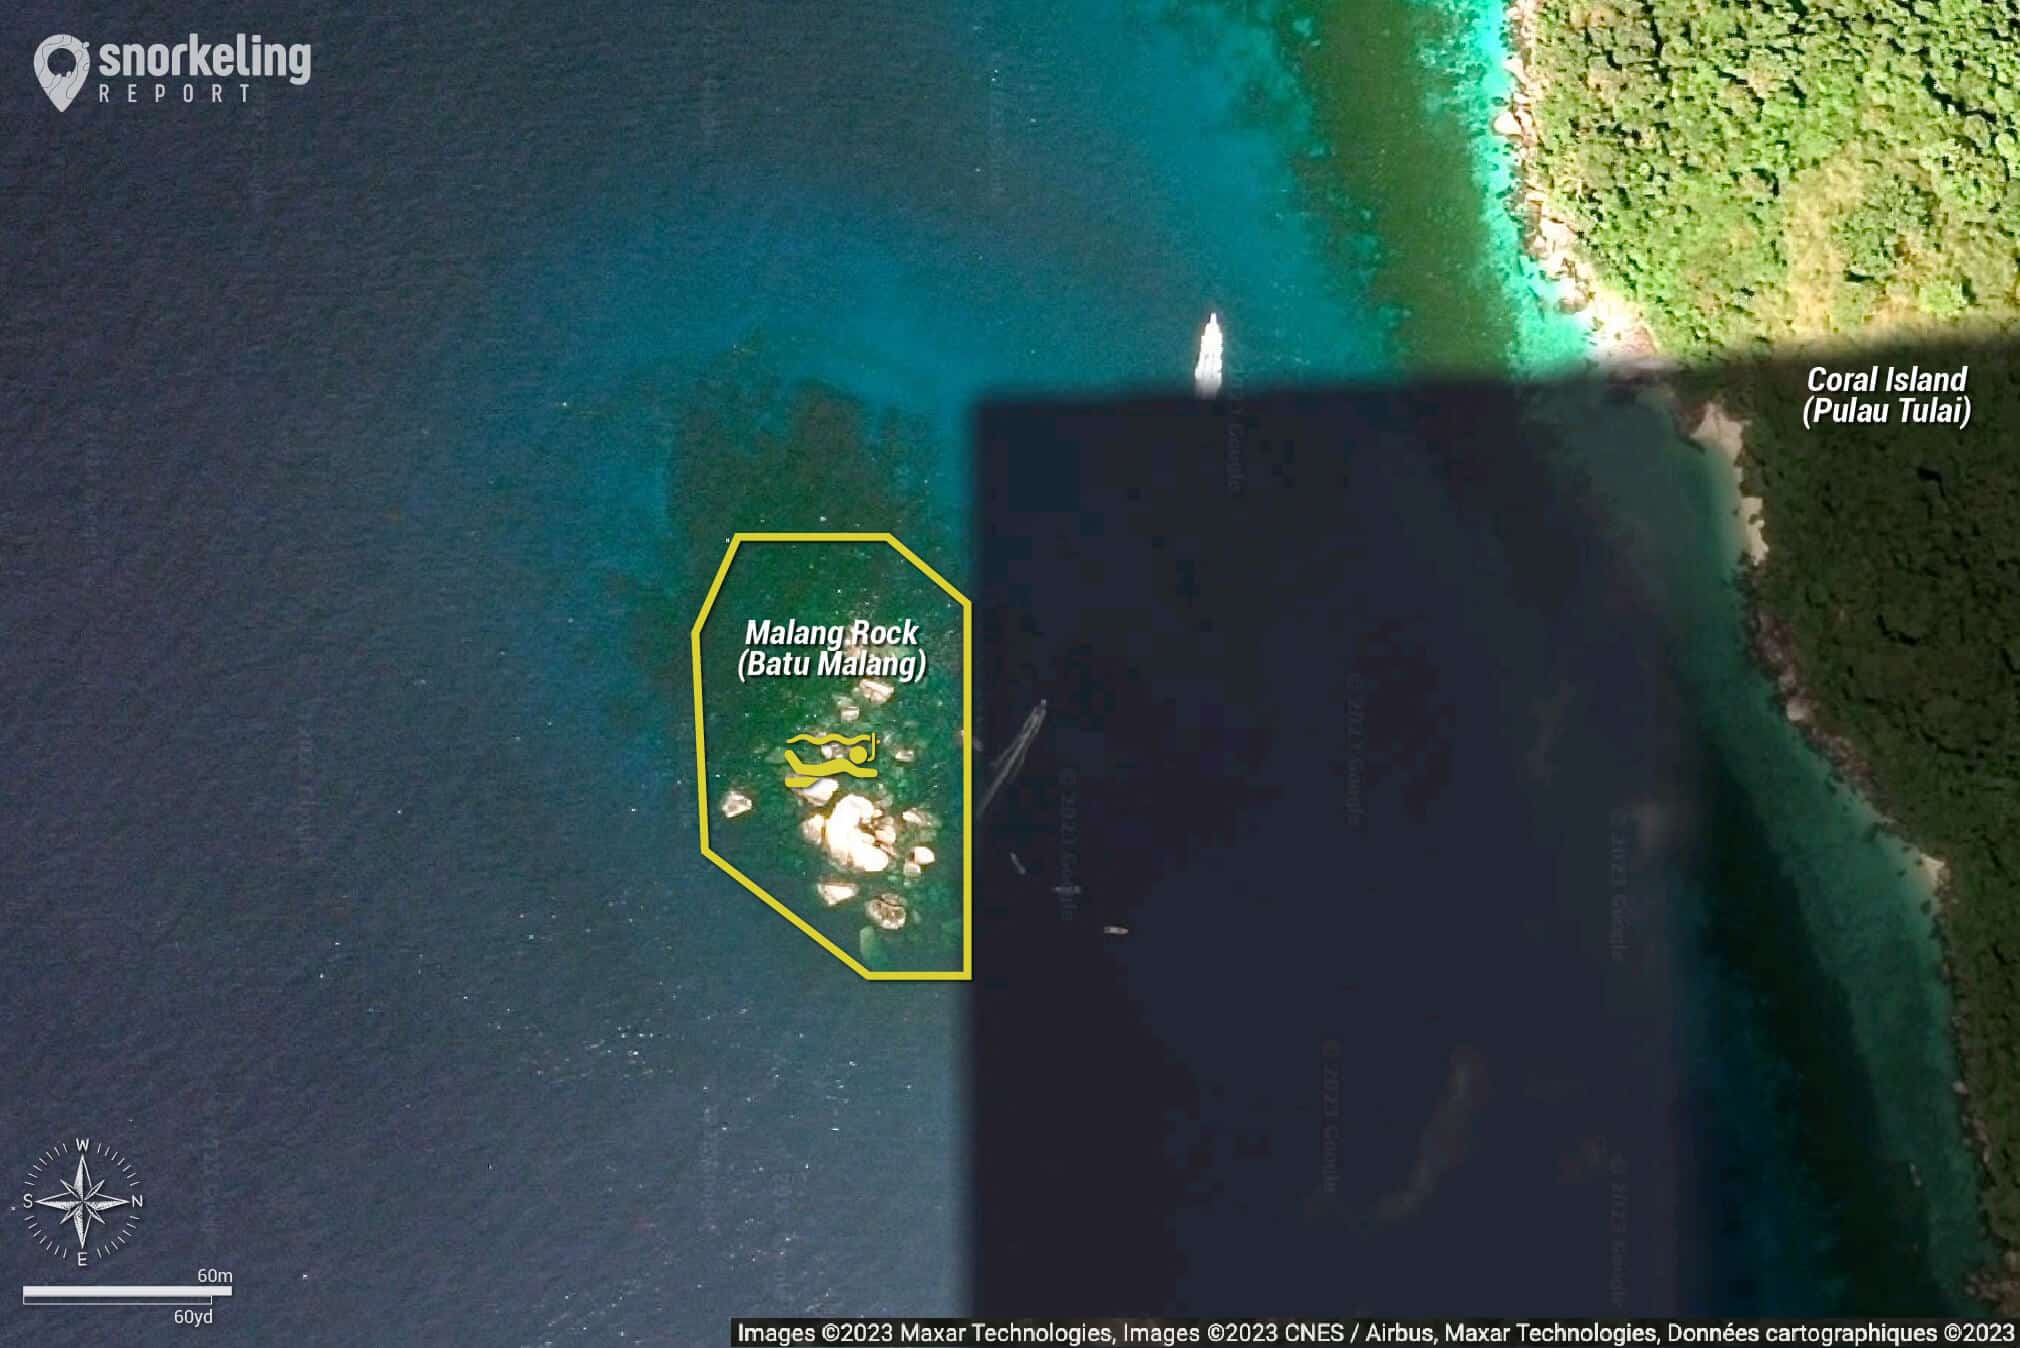 Malang Rock snorkeling map